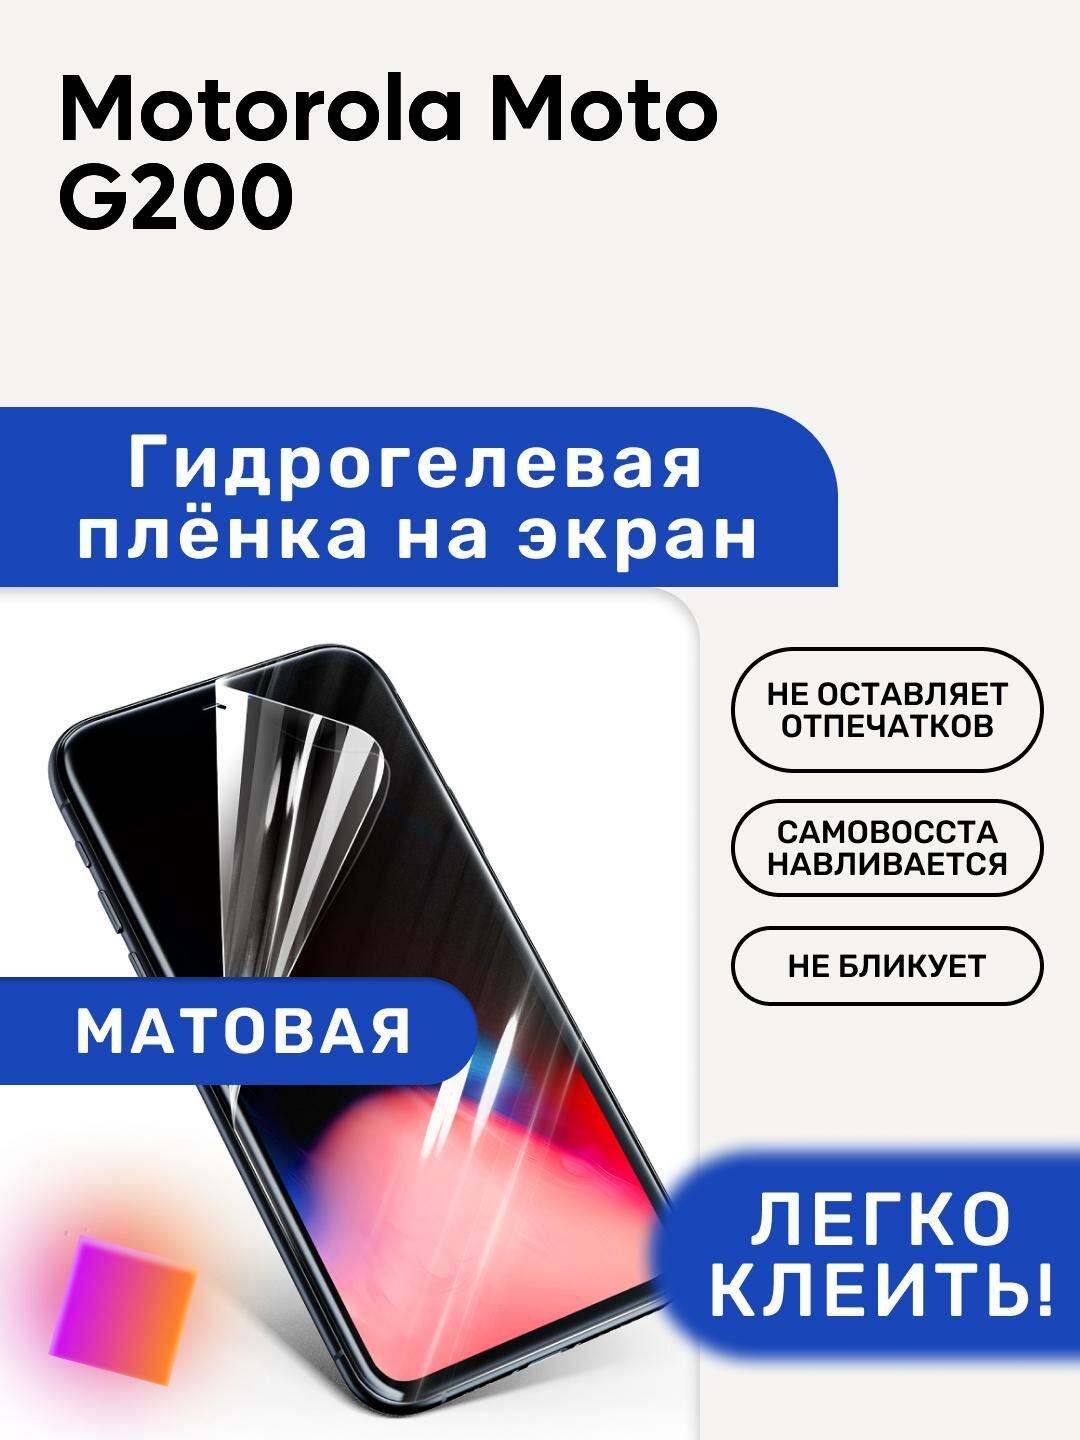 Матовая Гидрогелевая плёнка, полиуретановая, защита экрана Motorola Moto G200